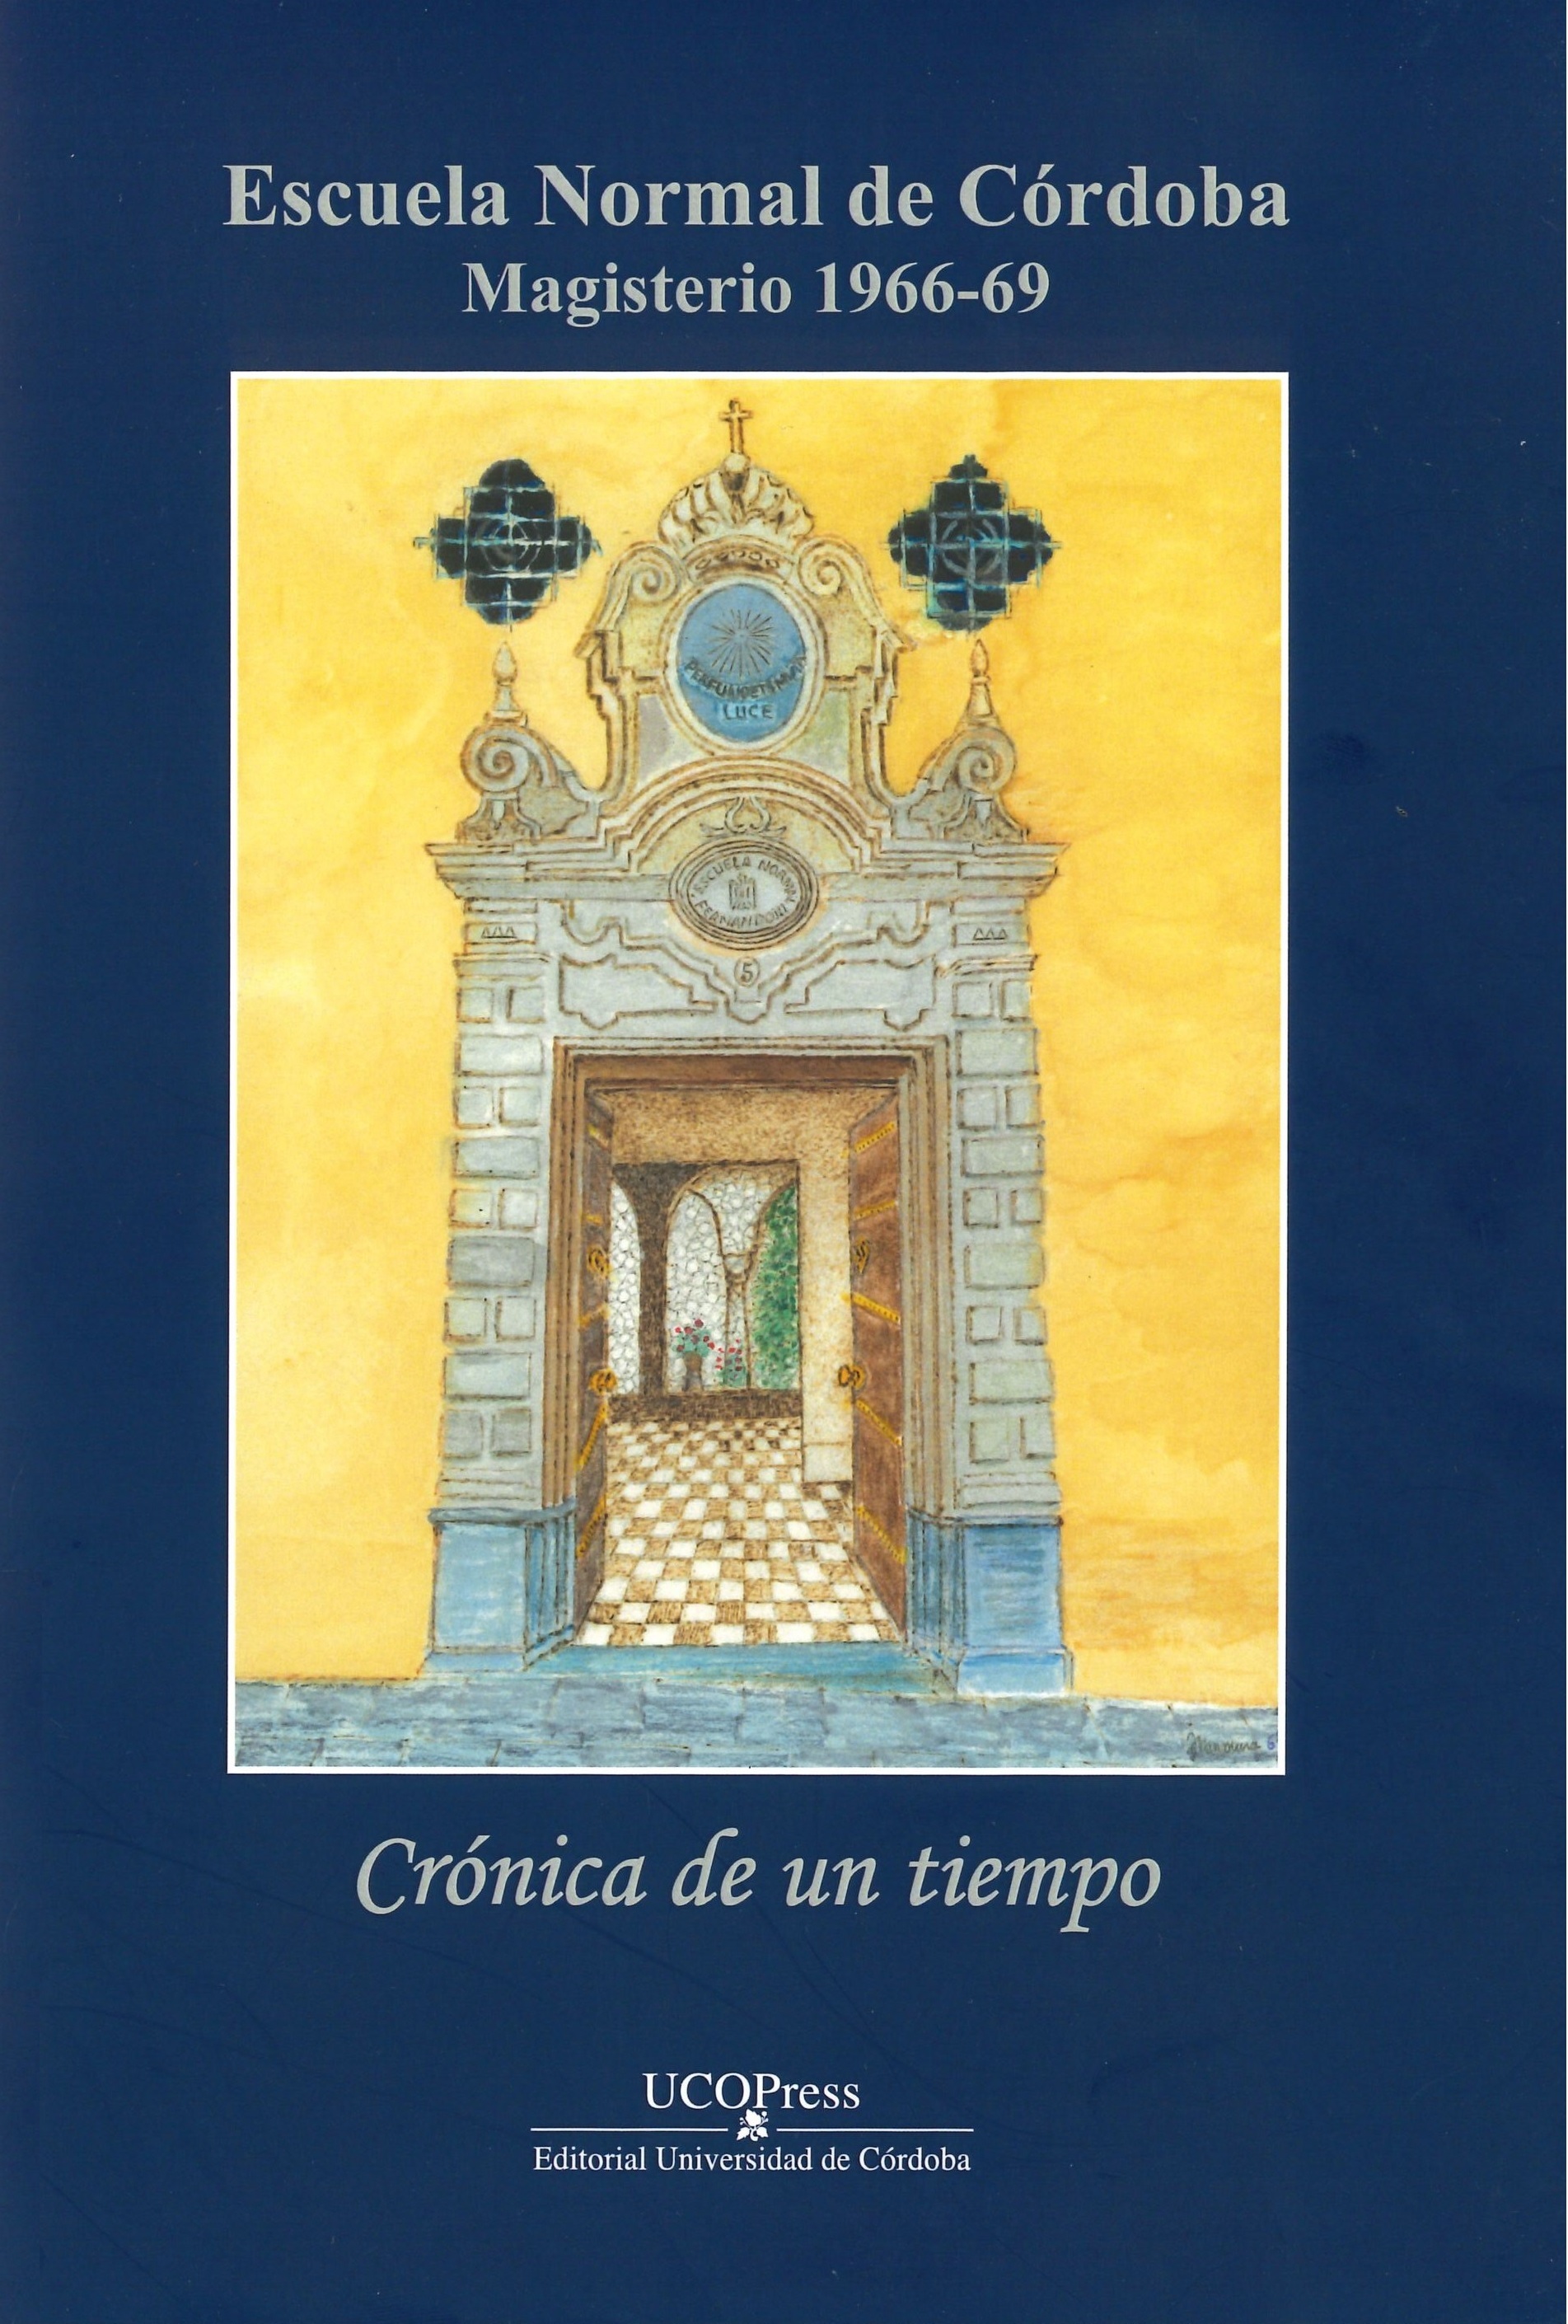 Imagen de portada del libro Escuela Normal de Córdoba